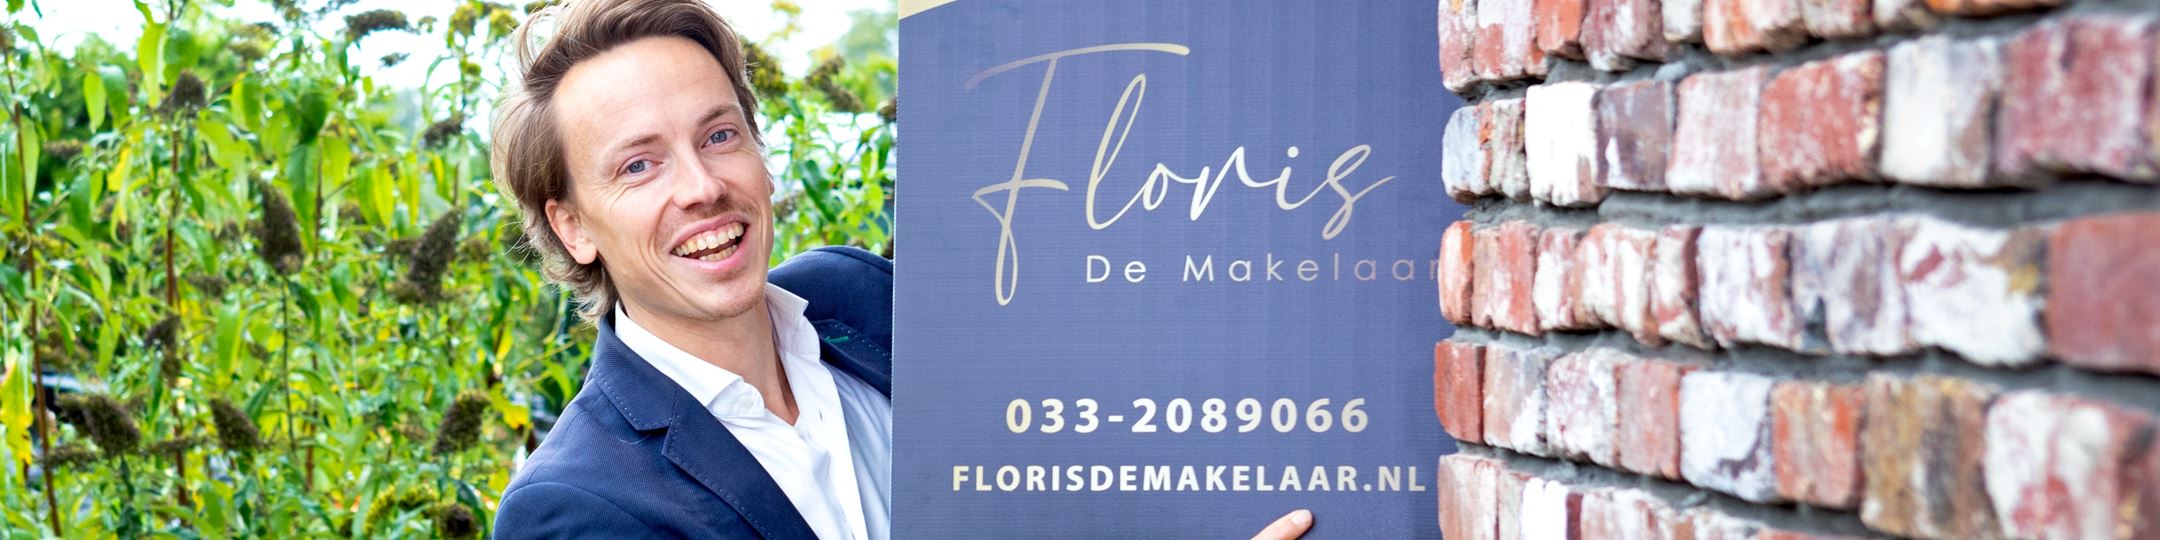 Banner Floris De Makelaar